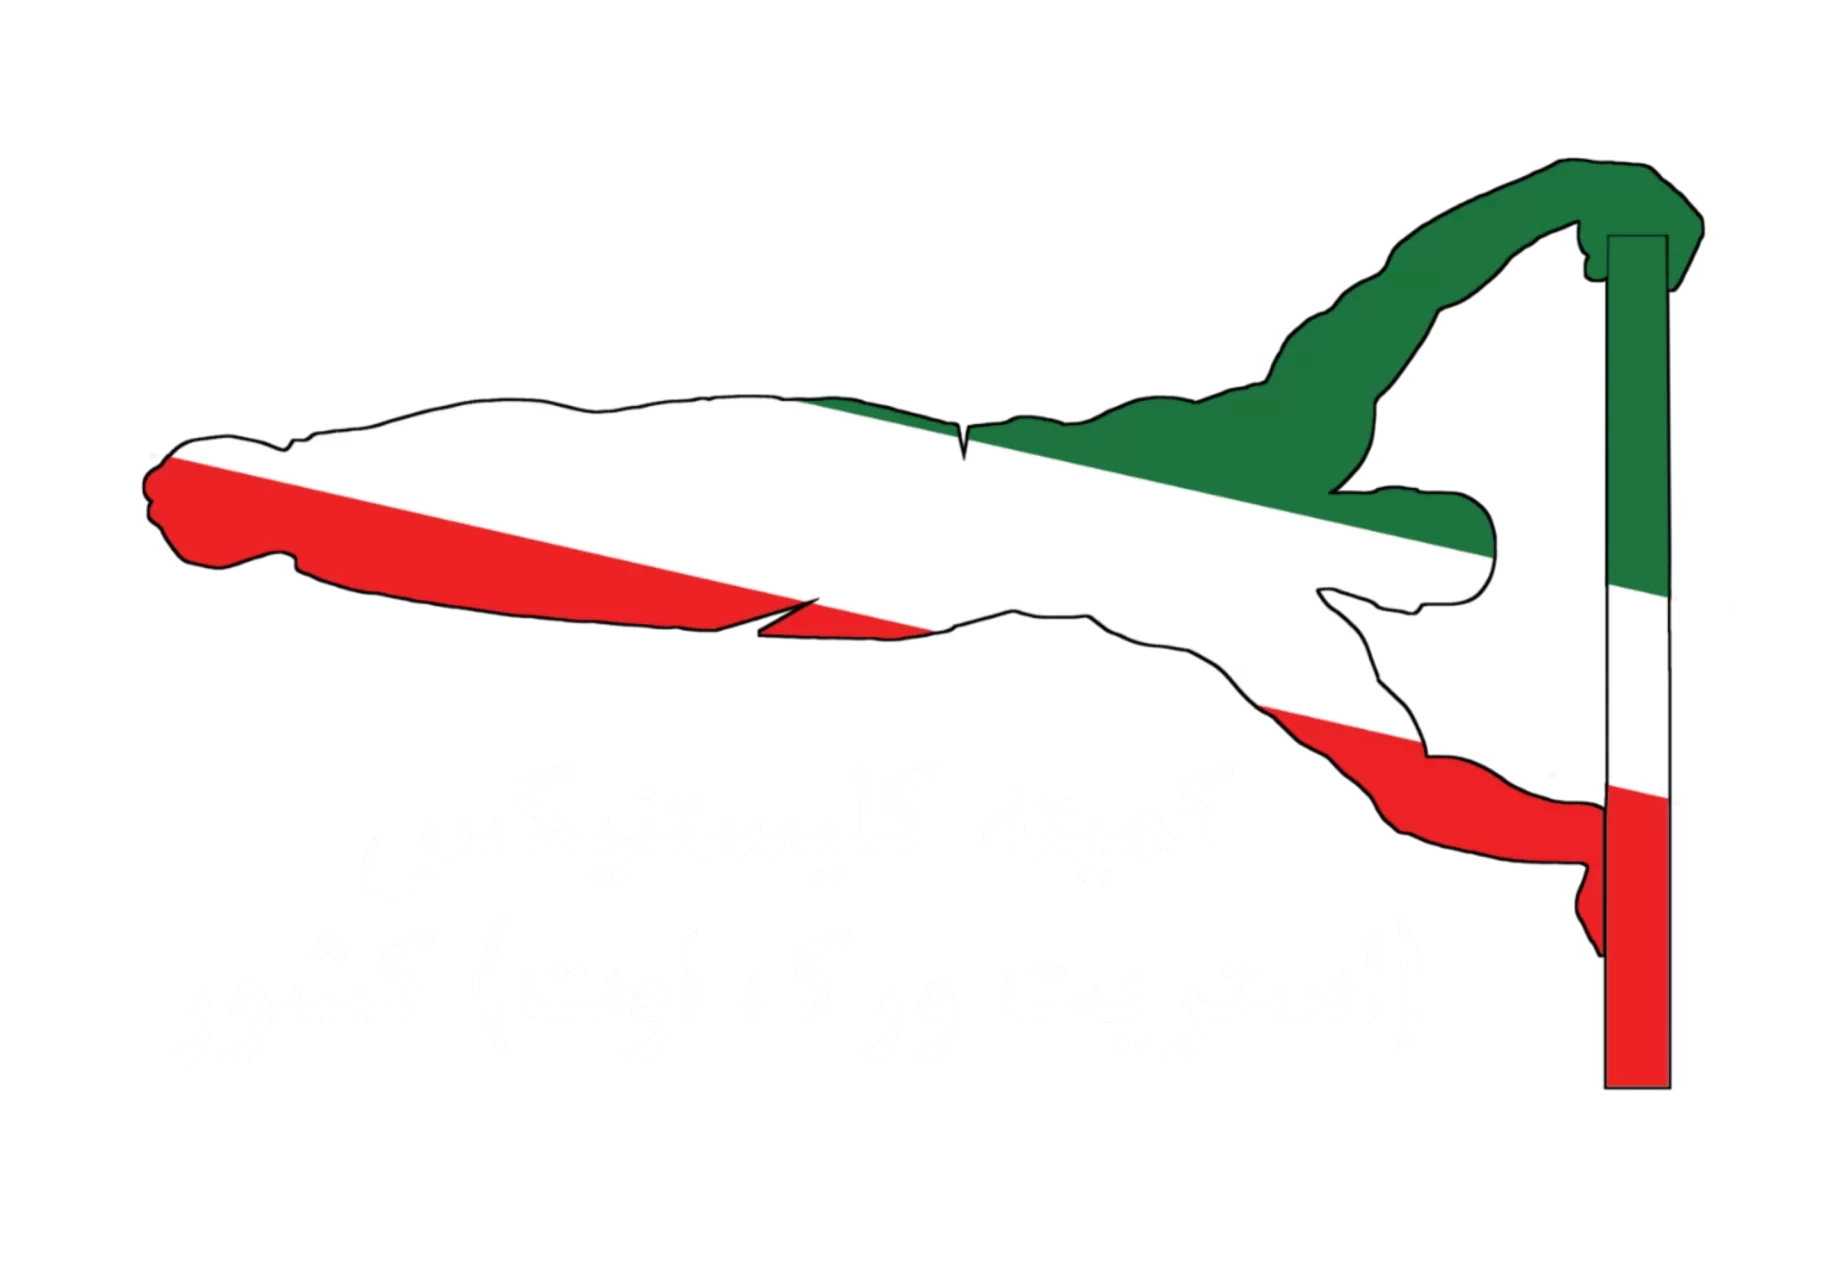 iranswc